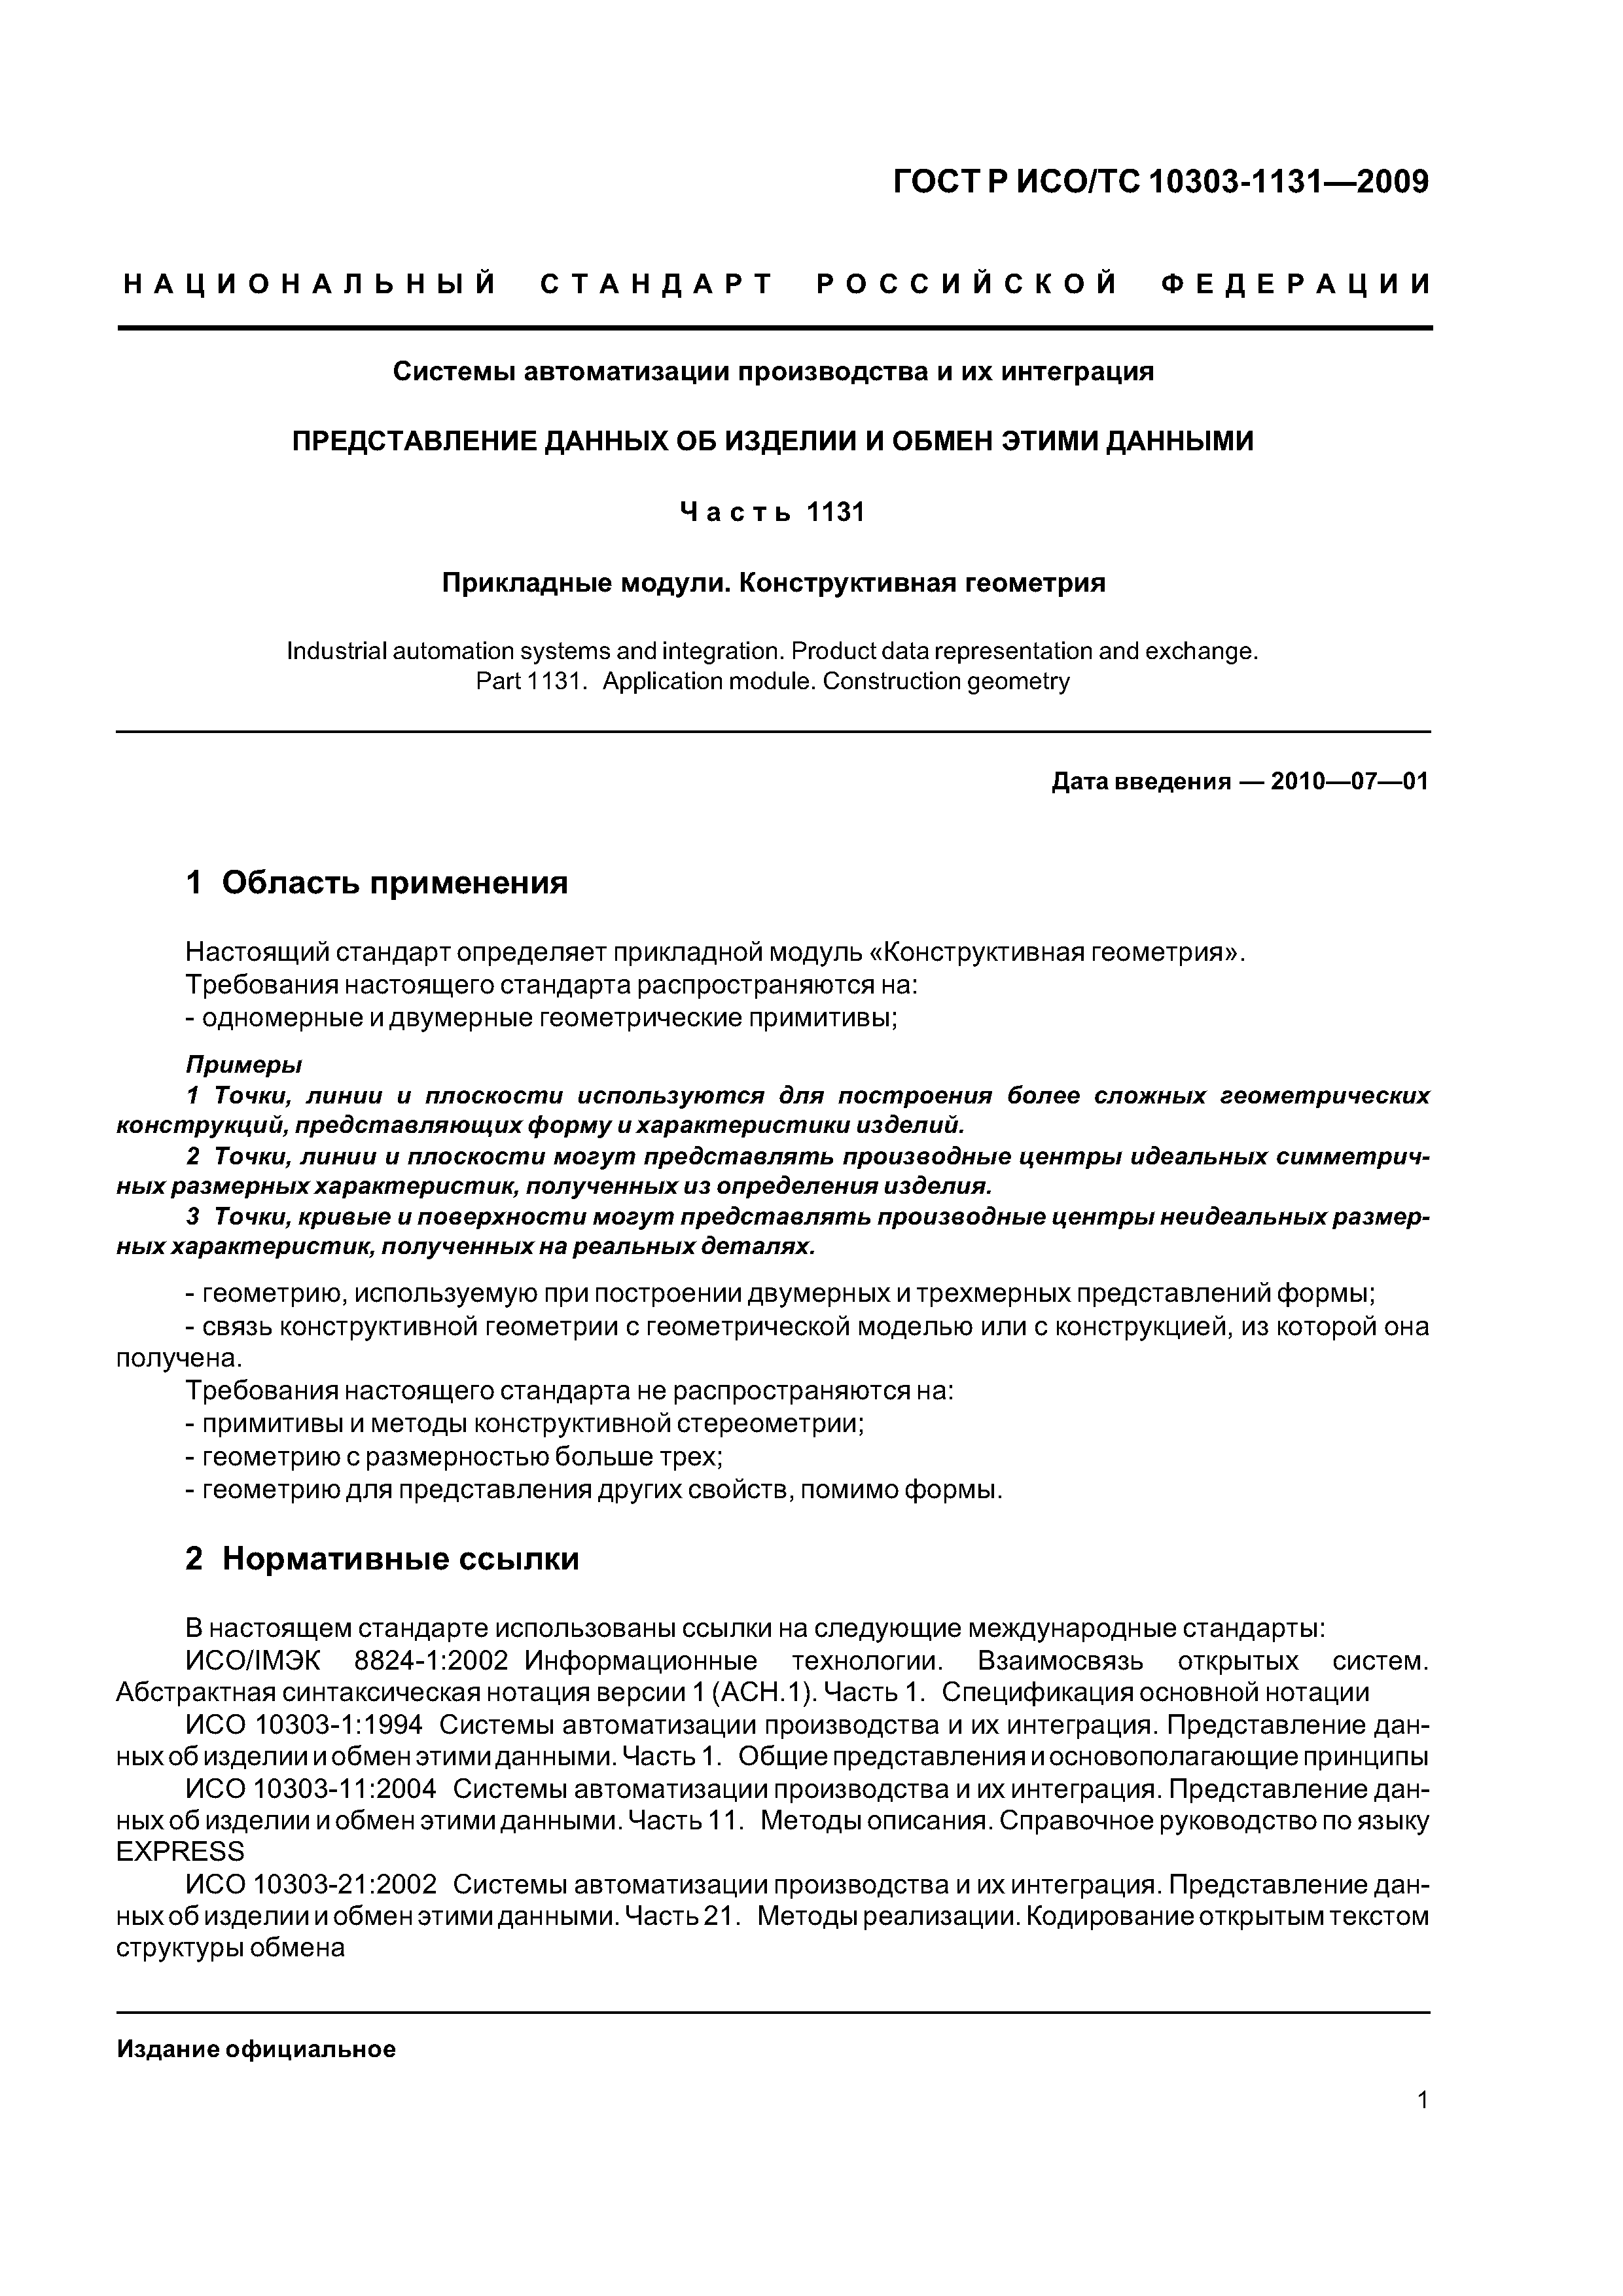 ГОСТ Р ИСО/ТС 10303-1131-2009